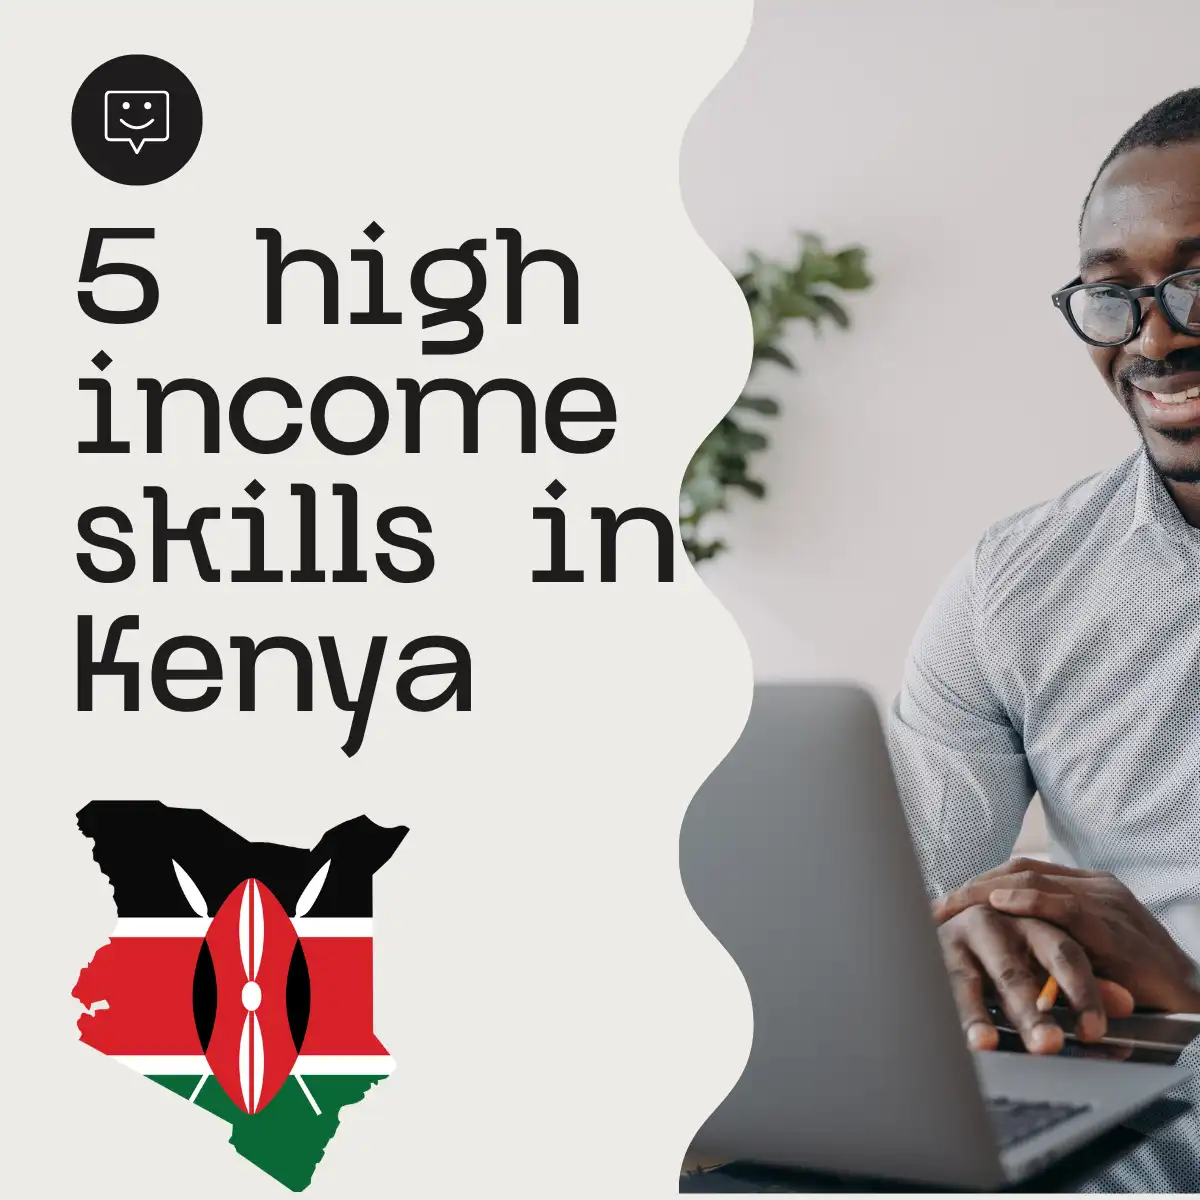 high income skills in Kenya